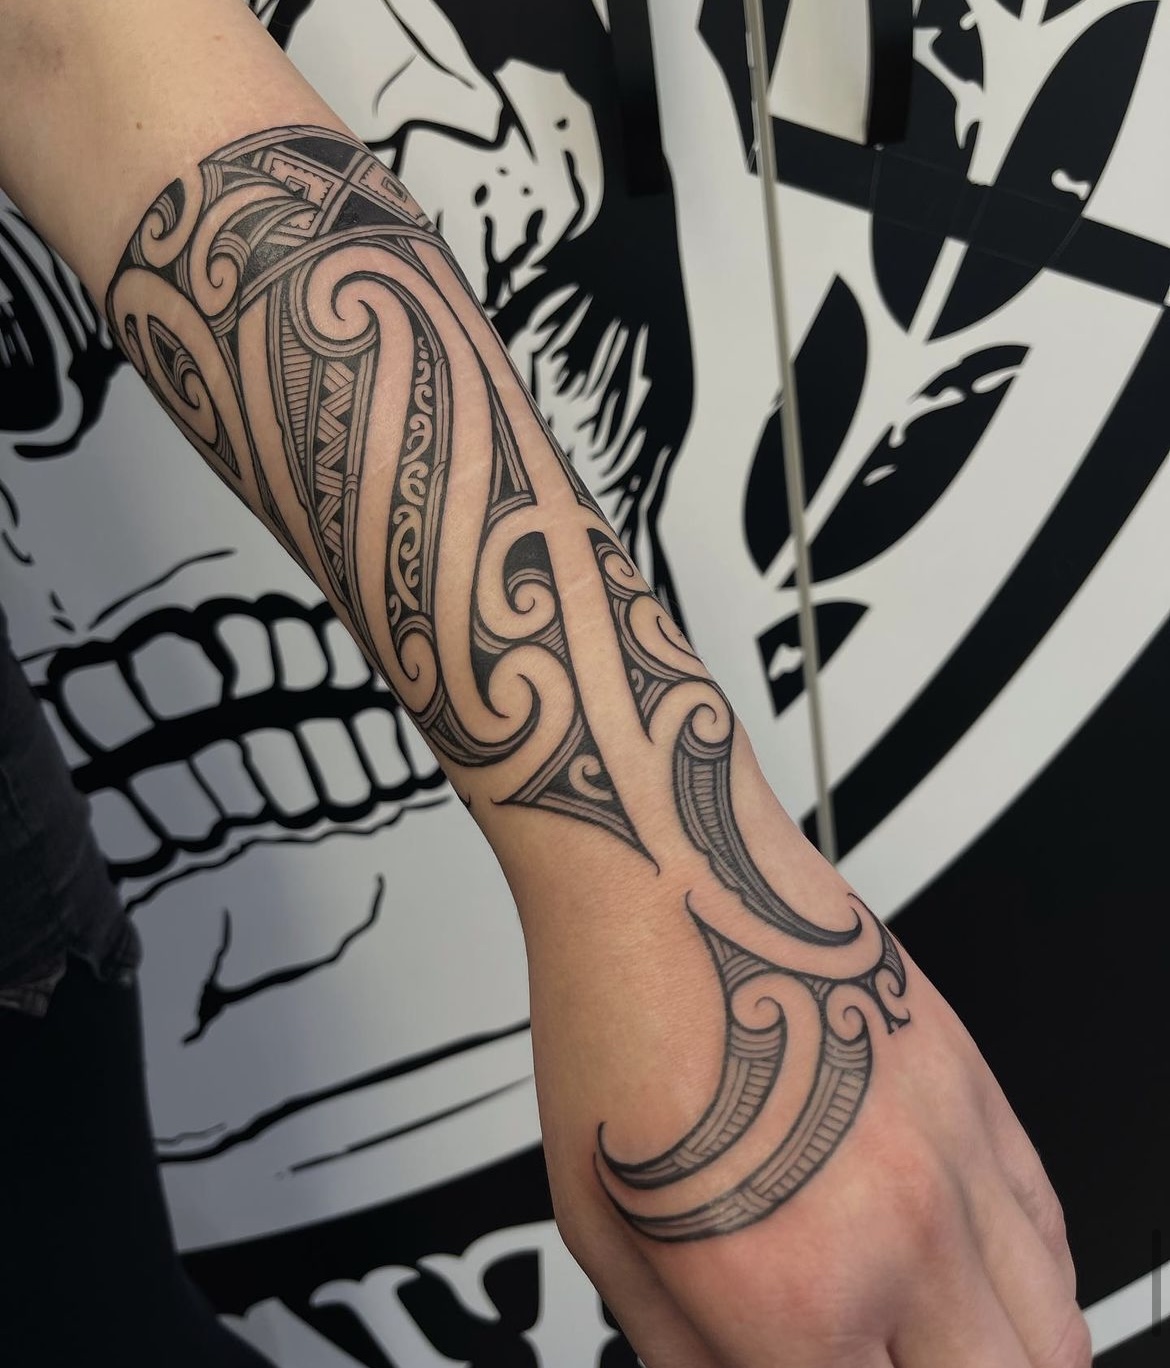 Tattoo uploaded by Tuigamala Andy • #freehand #mixed #polynesian forearm  tattoo #samoan #maori #kirituhi • Tattoodo